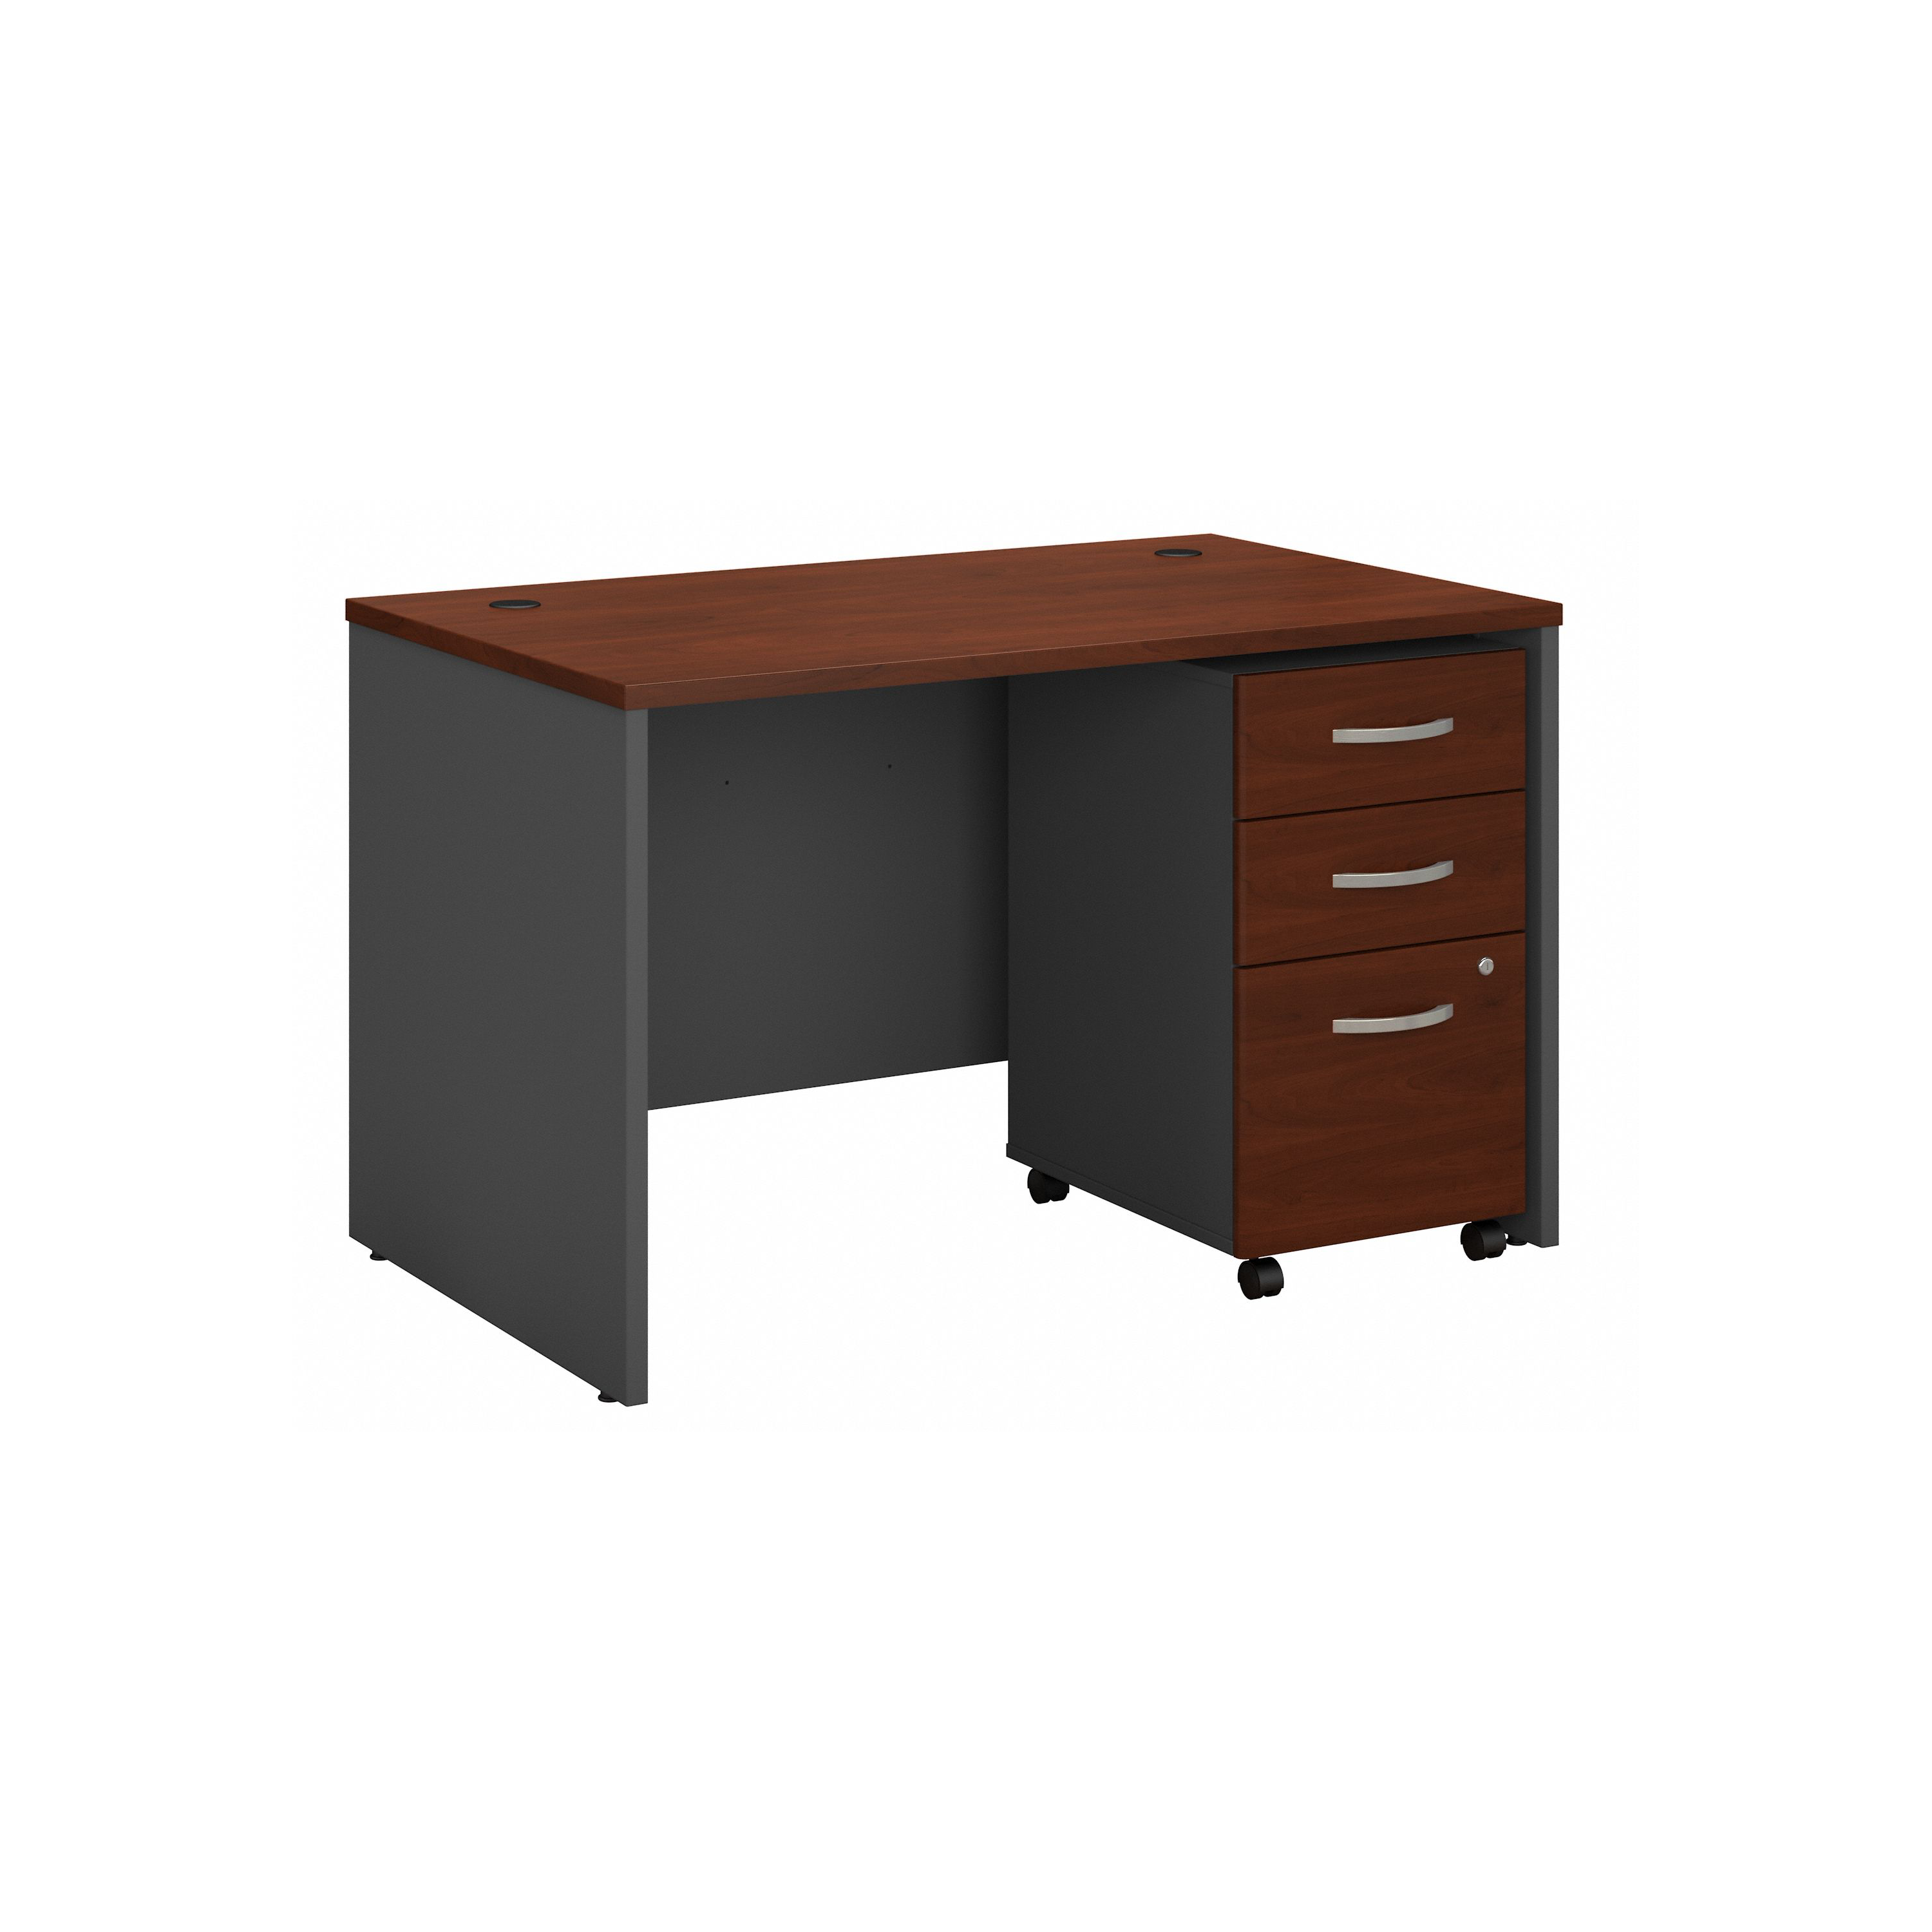 Shop Bush Business Furniture Series C 48W x 30D Office Desk with Mobile File Cabinet 02 SRC048HCSU #color_hansen cherry